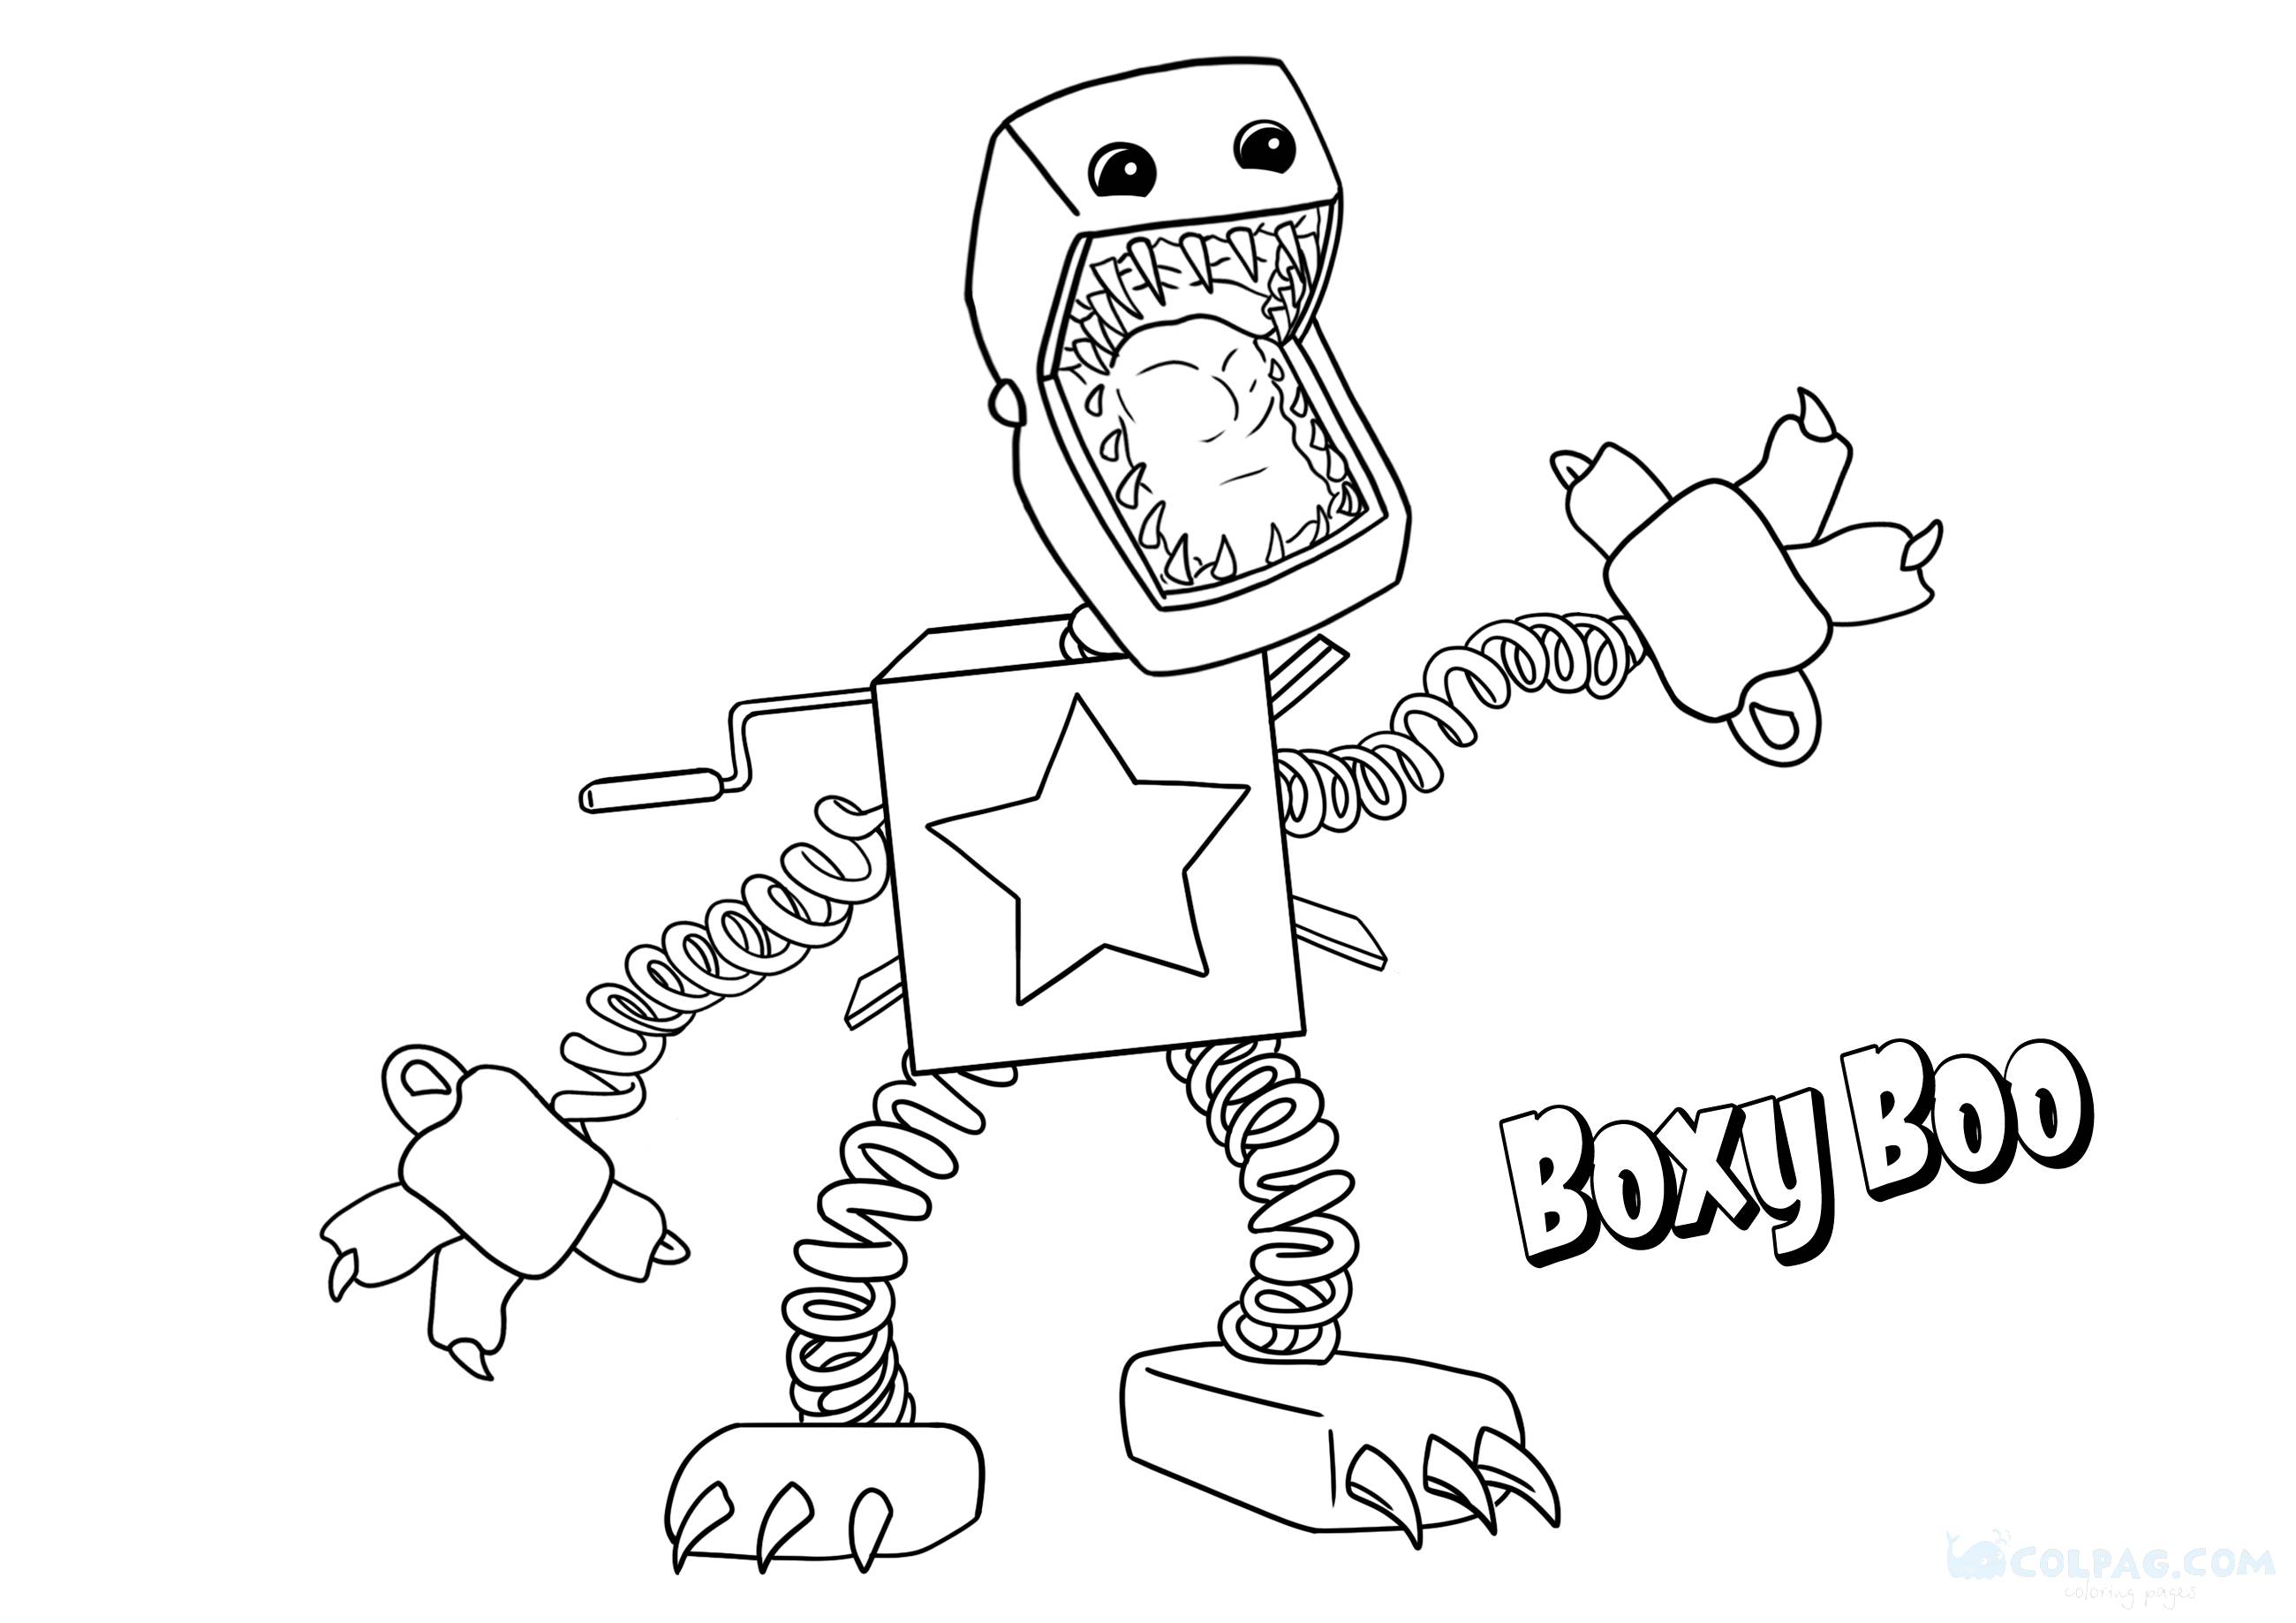 Disegni da colorare di Boxy Boo (Progetto: Playtime)